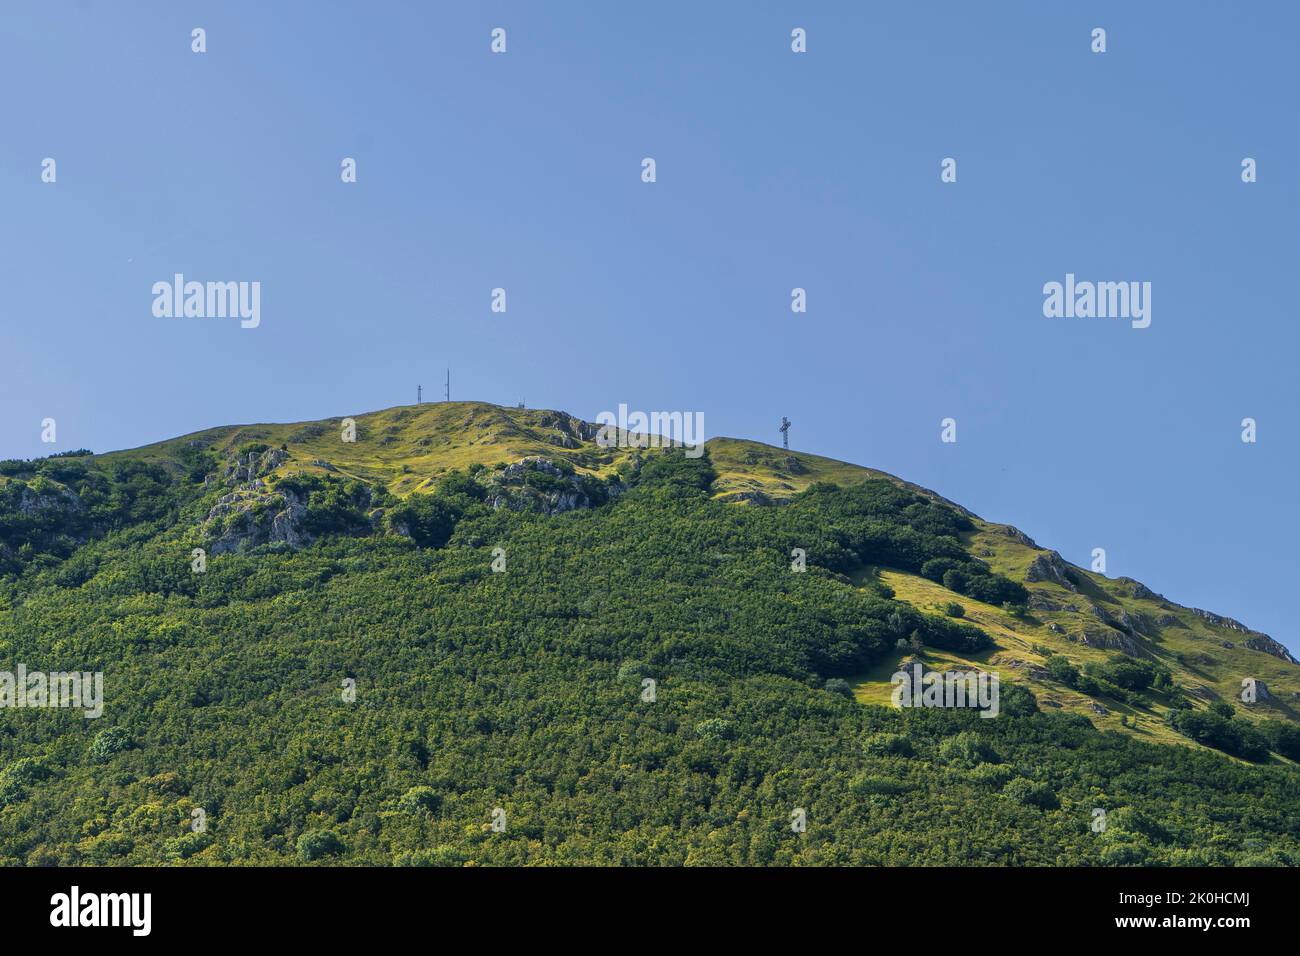 Monte San Vicino Nature Reserve, Pian dell’Elmo, Apiro, Marche, Italy, Europe Stock Photo